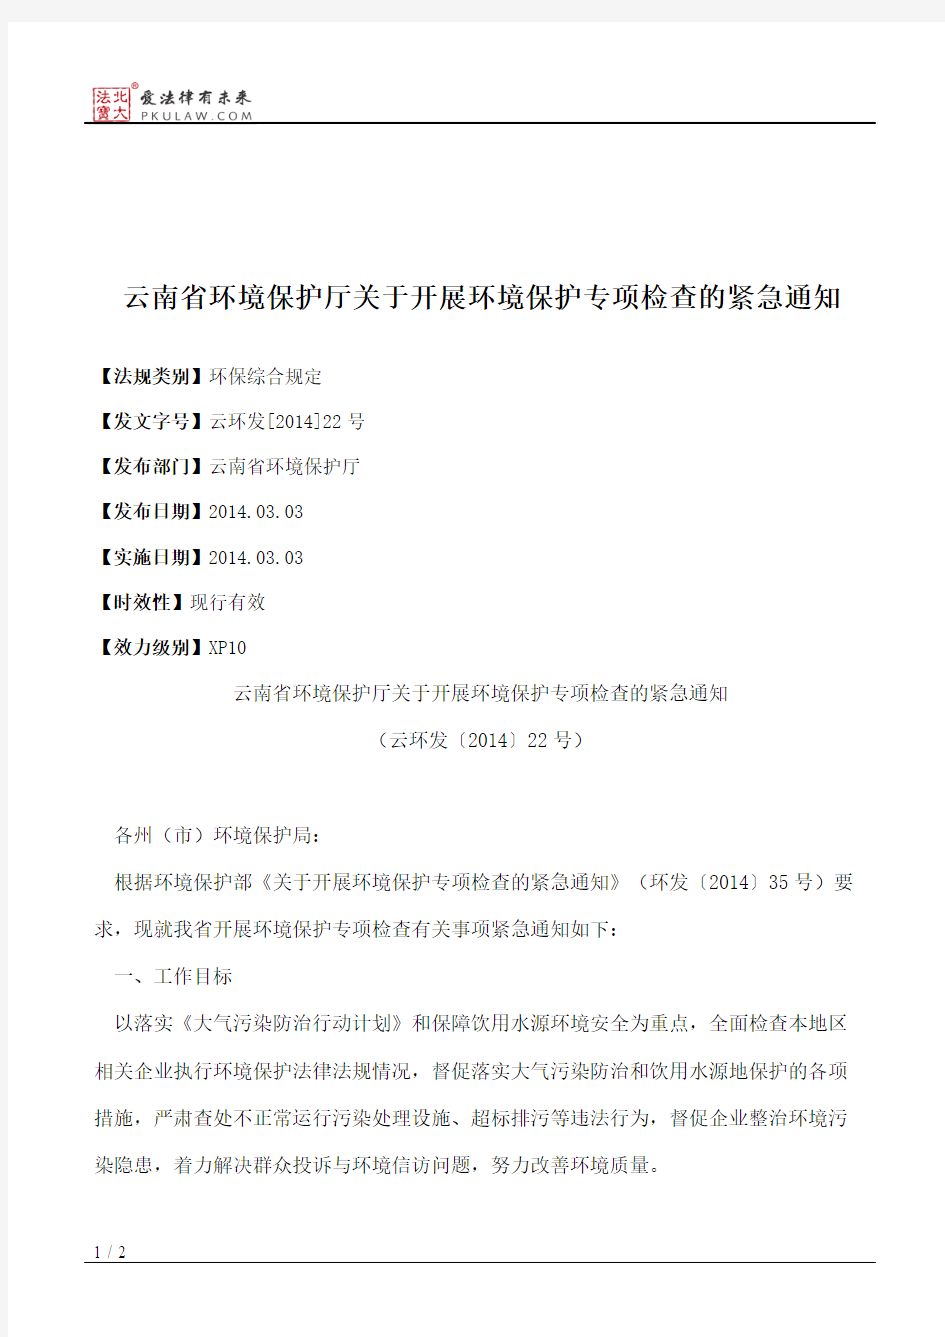 云南省环境保护厅关于开展环境保护专项检查的紧急通知